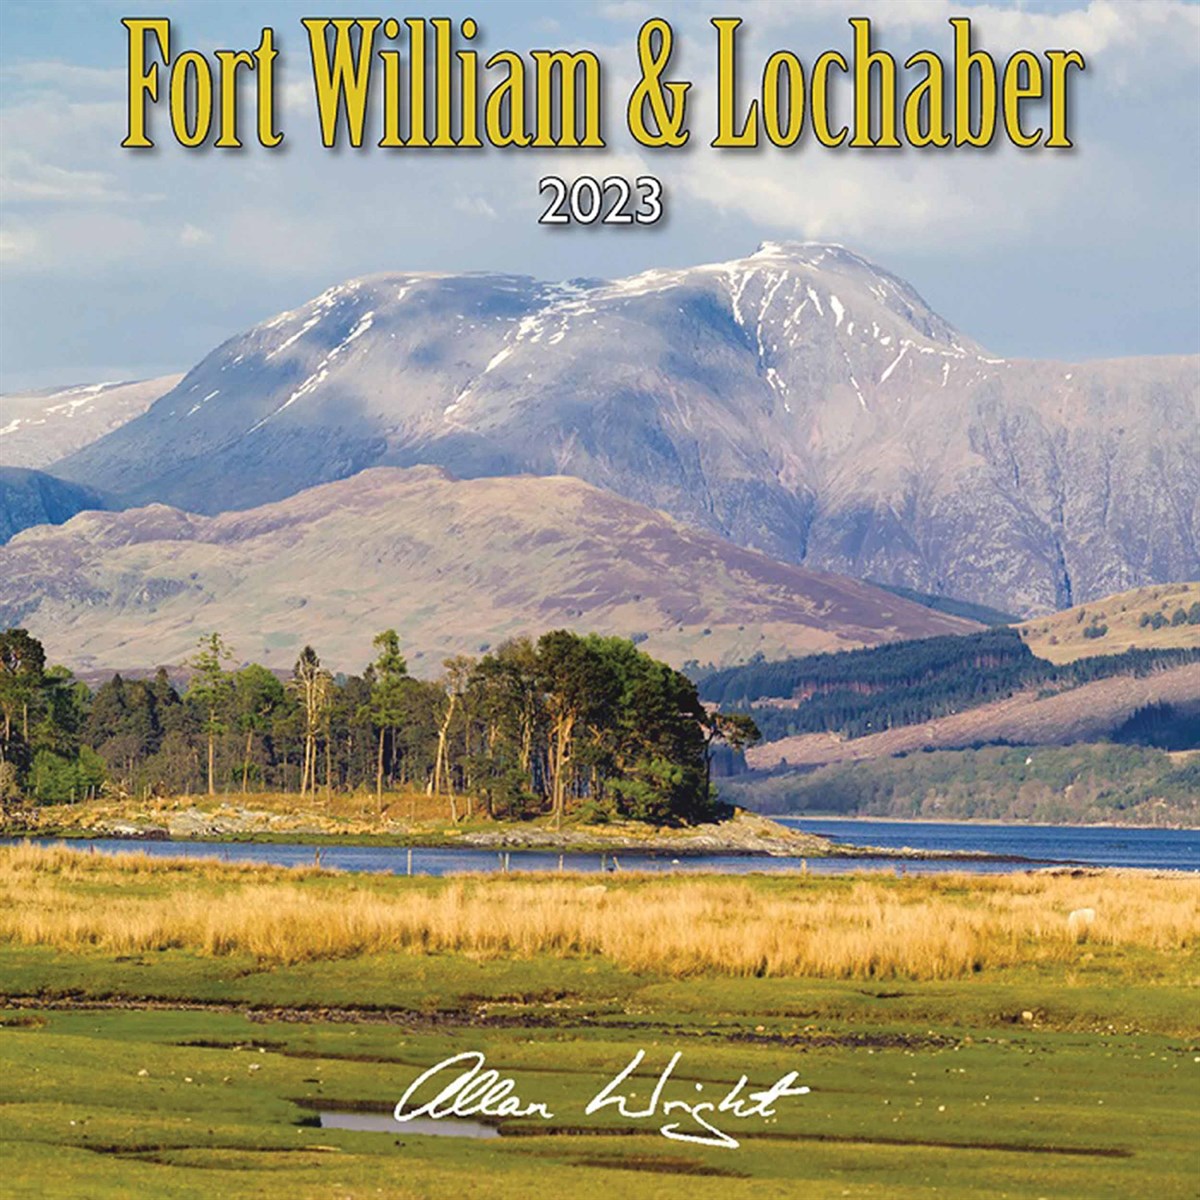 Fort William & Lochaber Mini 2023 Calendars